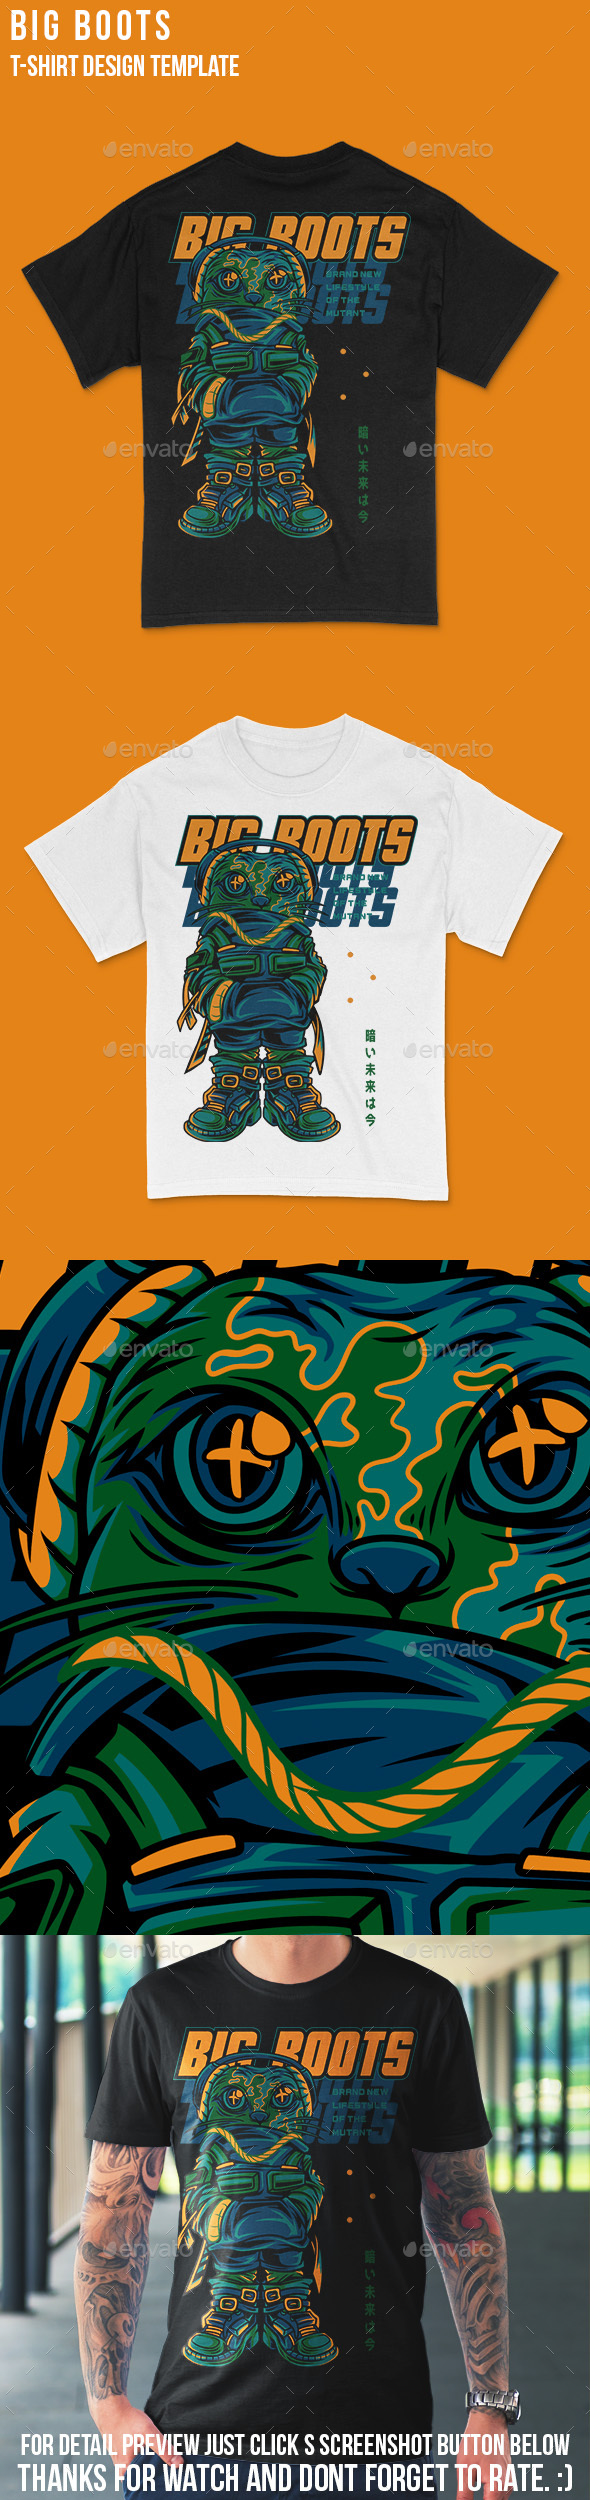 Big BootsTechwear Monster T-Shirt Design Template